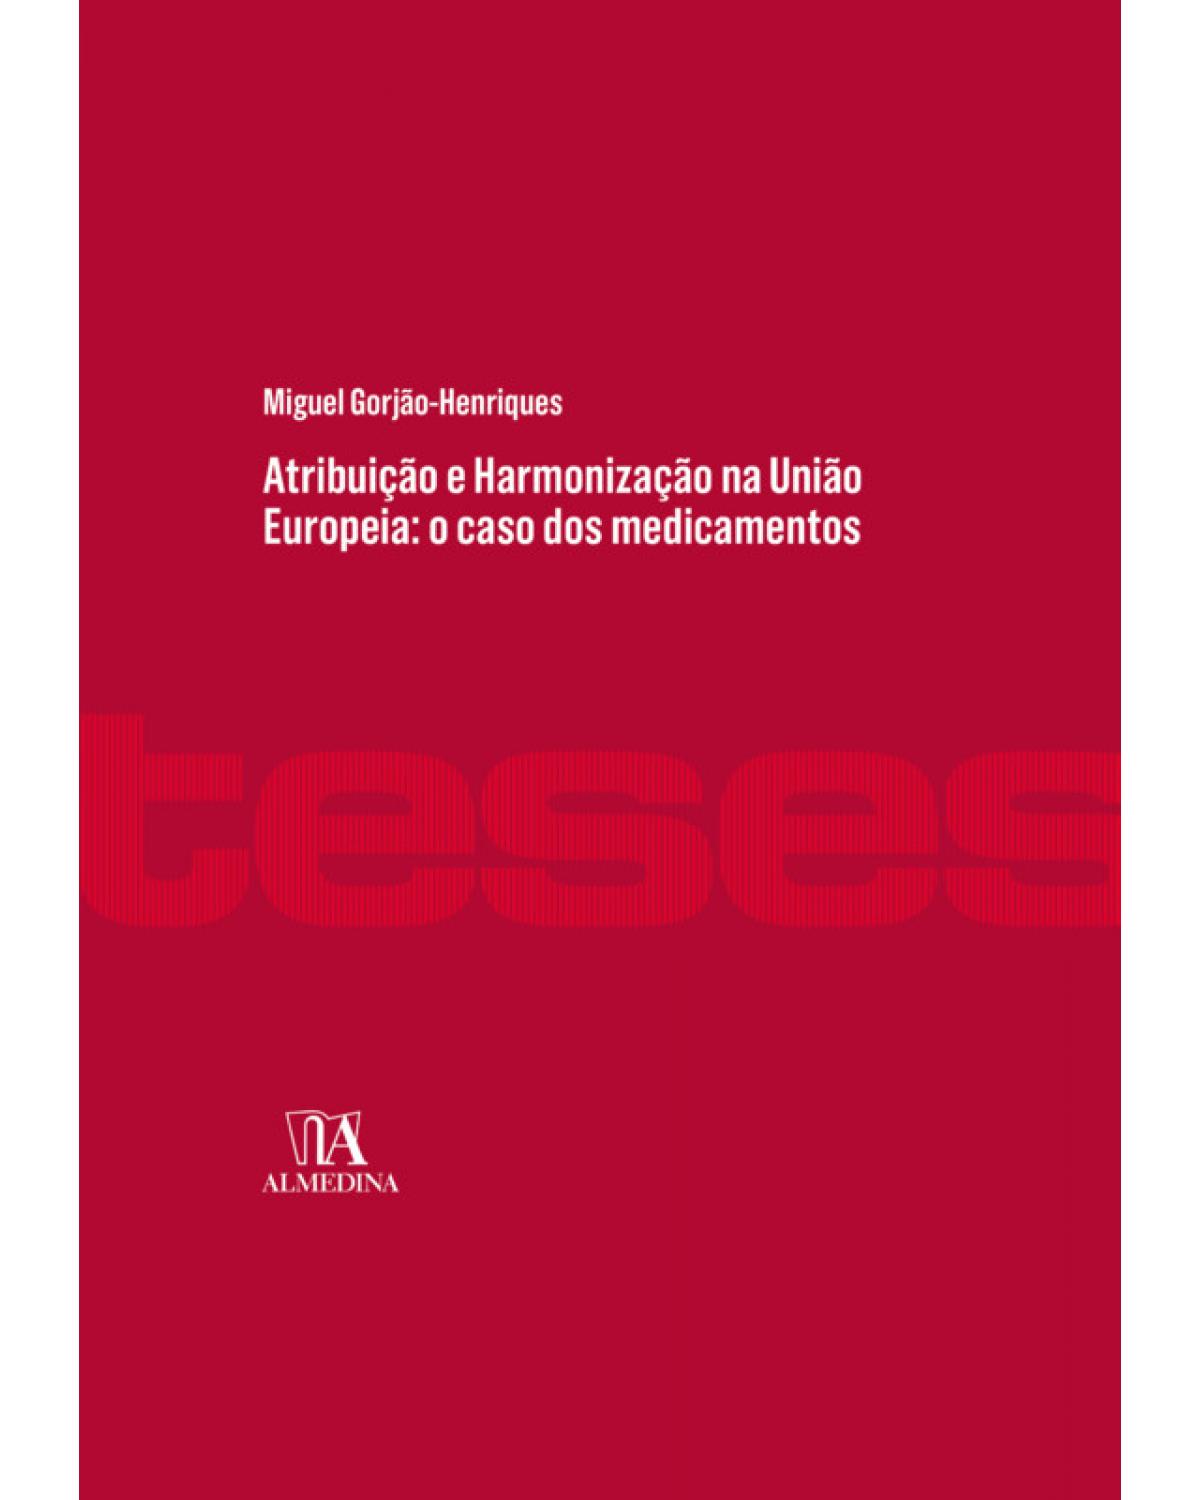 Atribuição e harmonização na União Europeia - o caso dos medicamentos - 1ª Edição | 2018